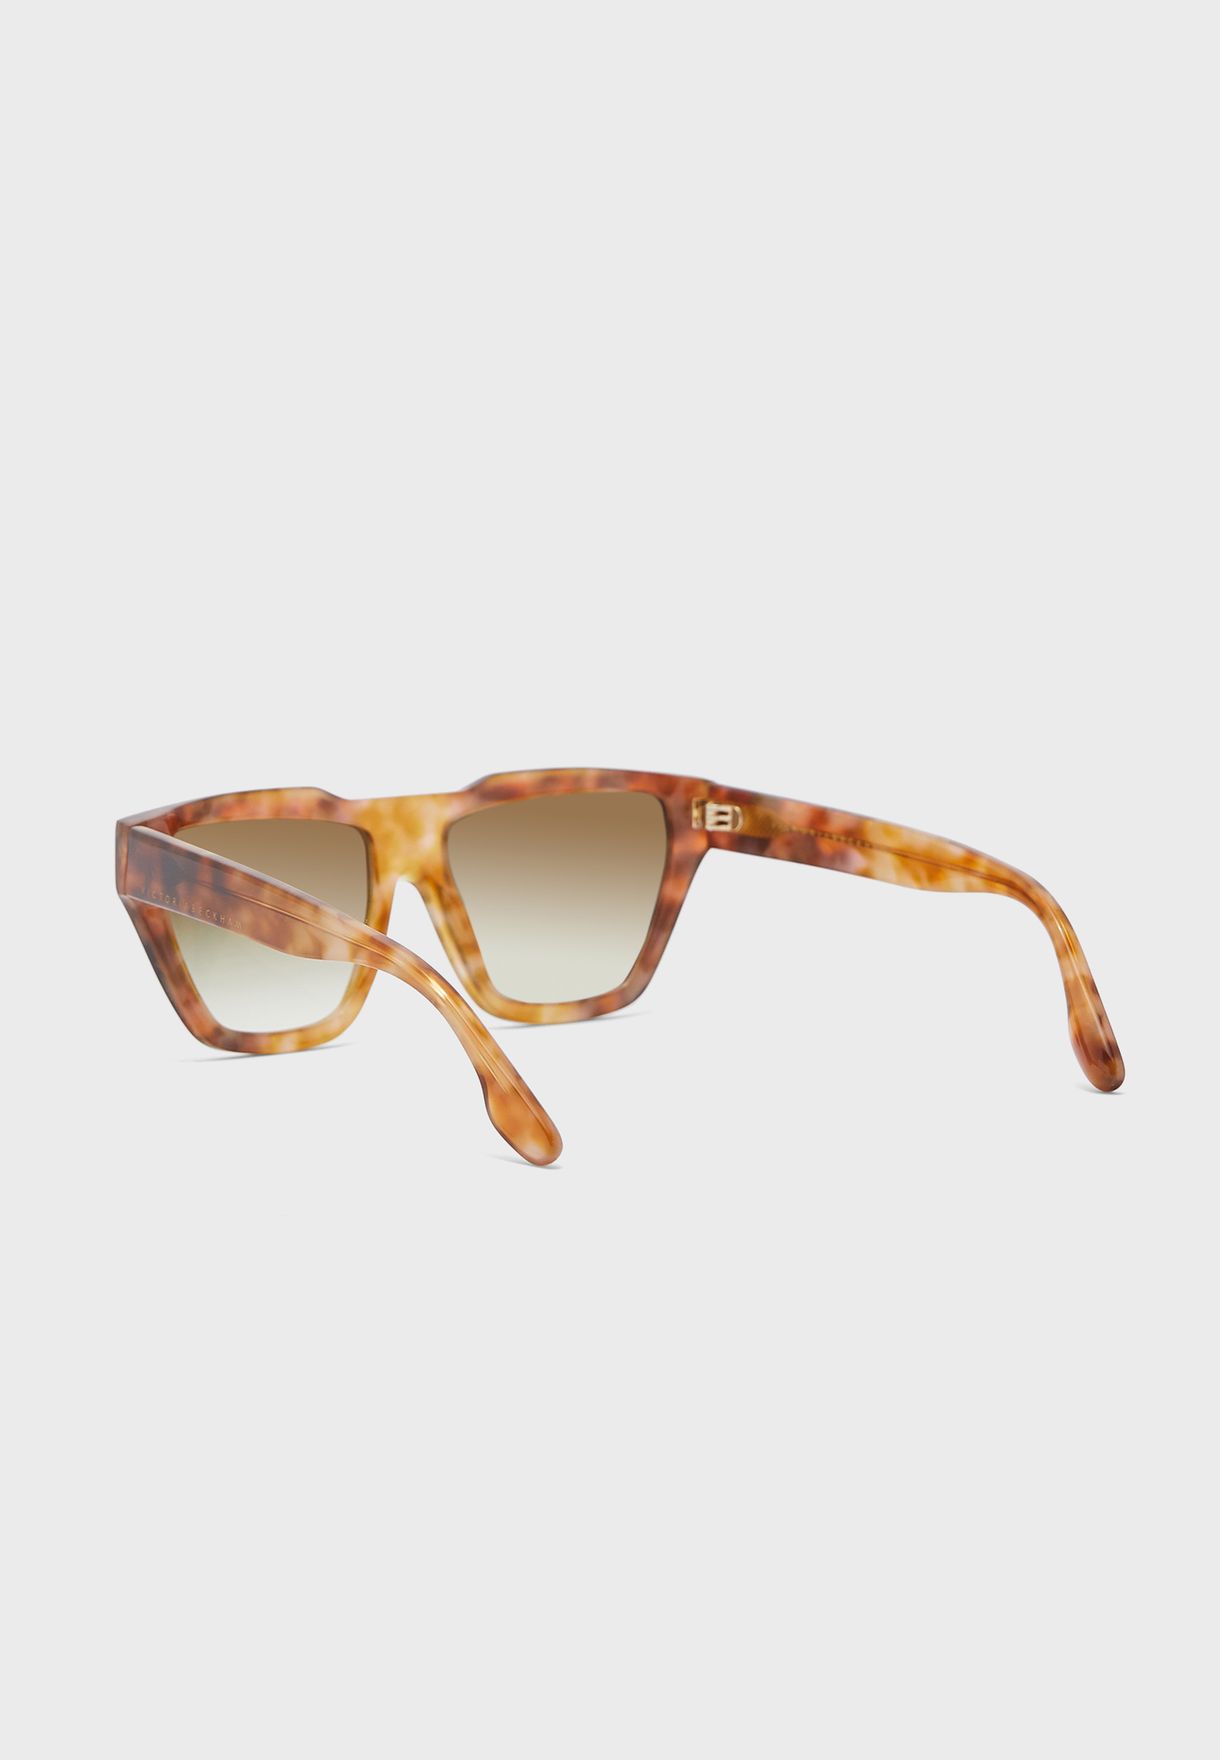 Vb145S Wayferer Sunglasses